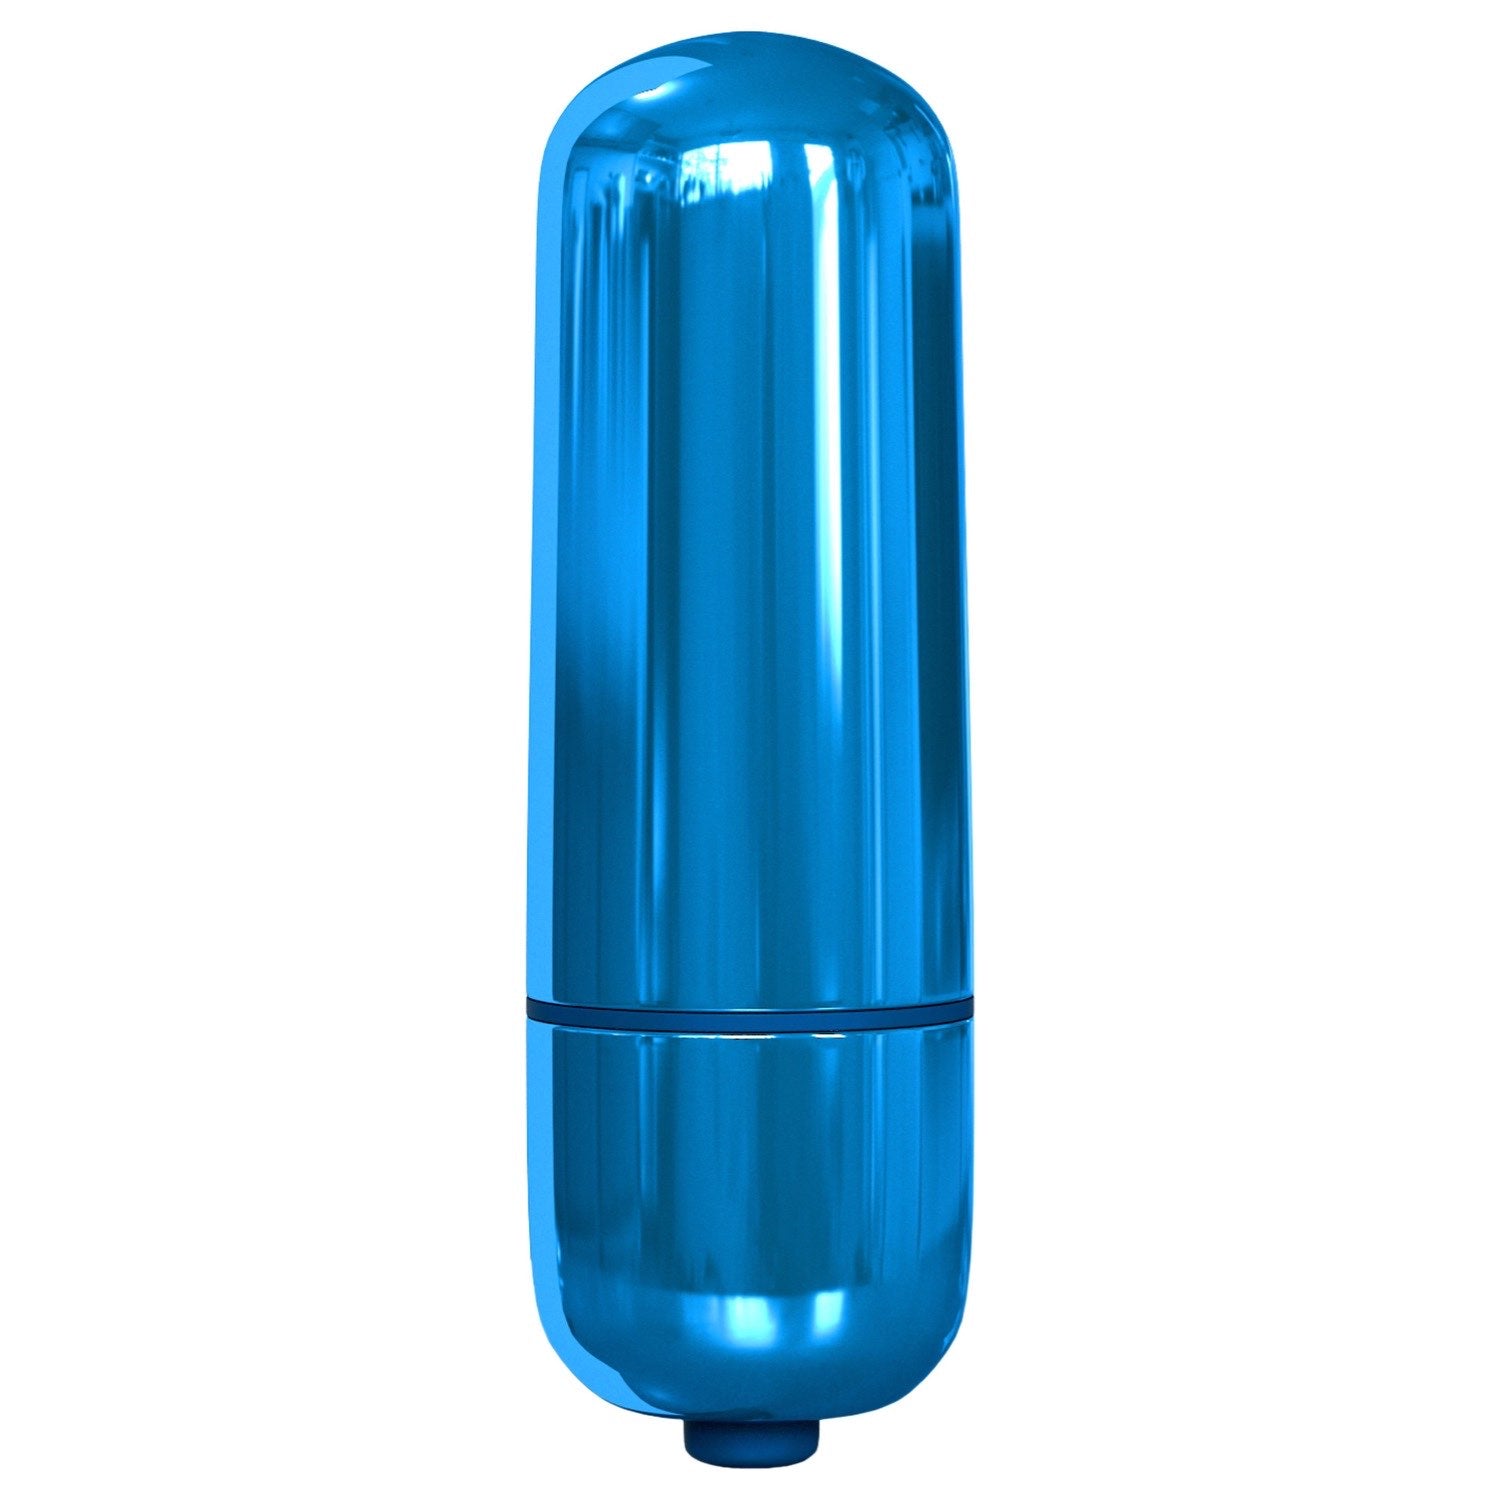 क्लासिक्स पॉकेट बुलेट - मैटेलिक ब्लू 5.6 सेमी बुलेट by Pipedream